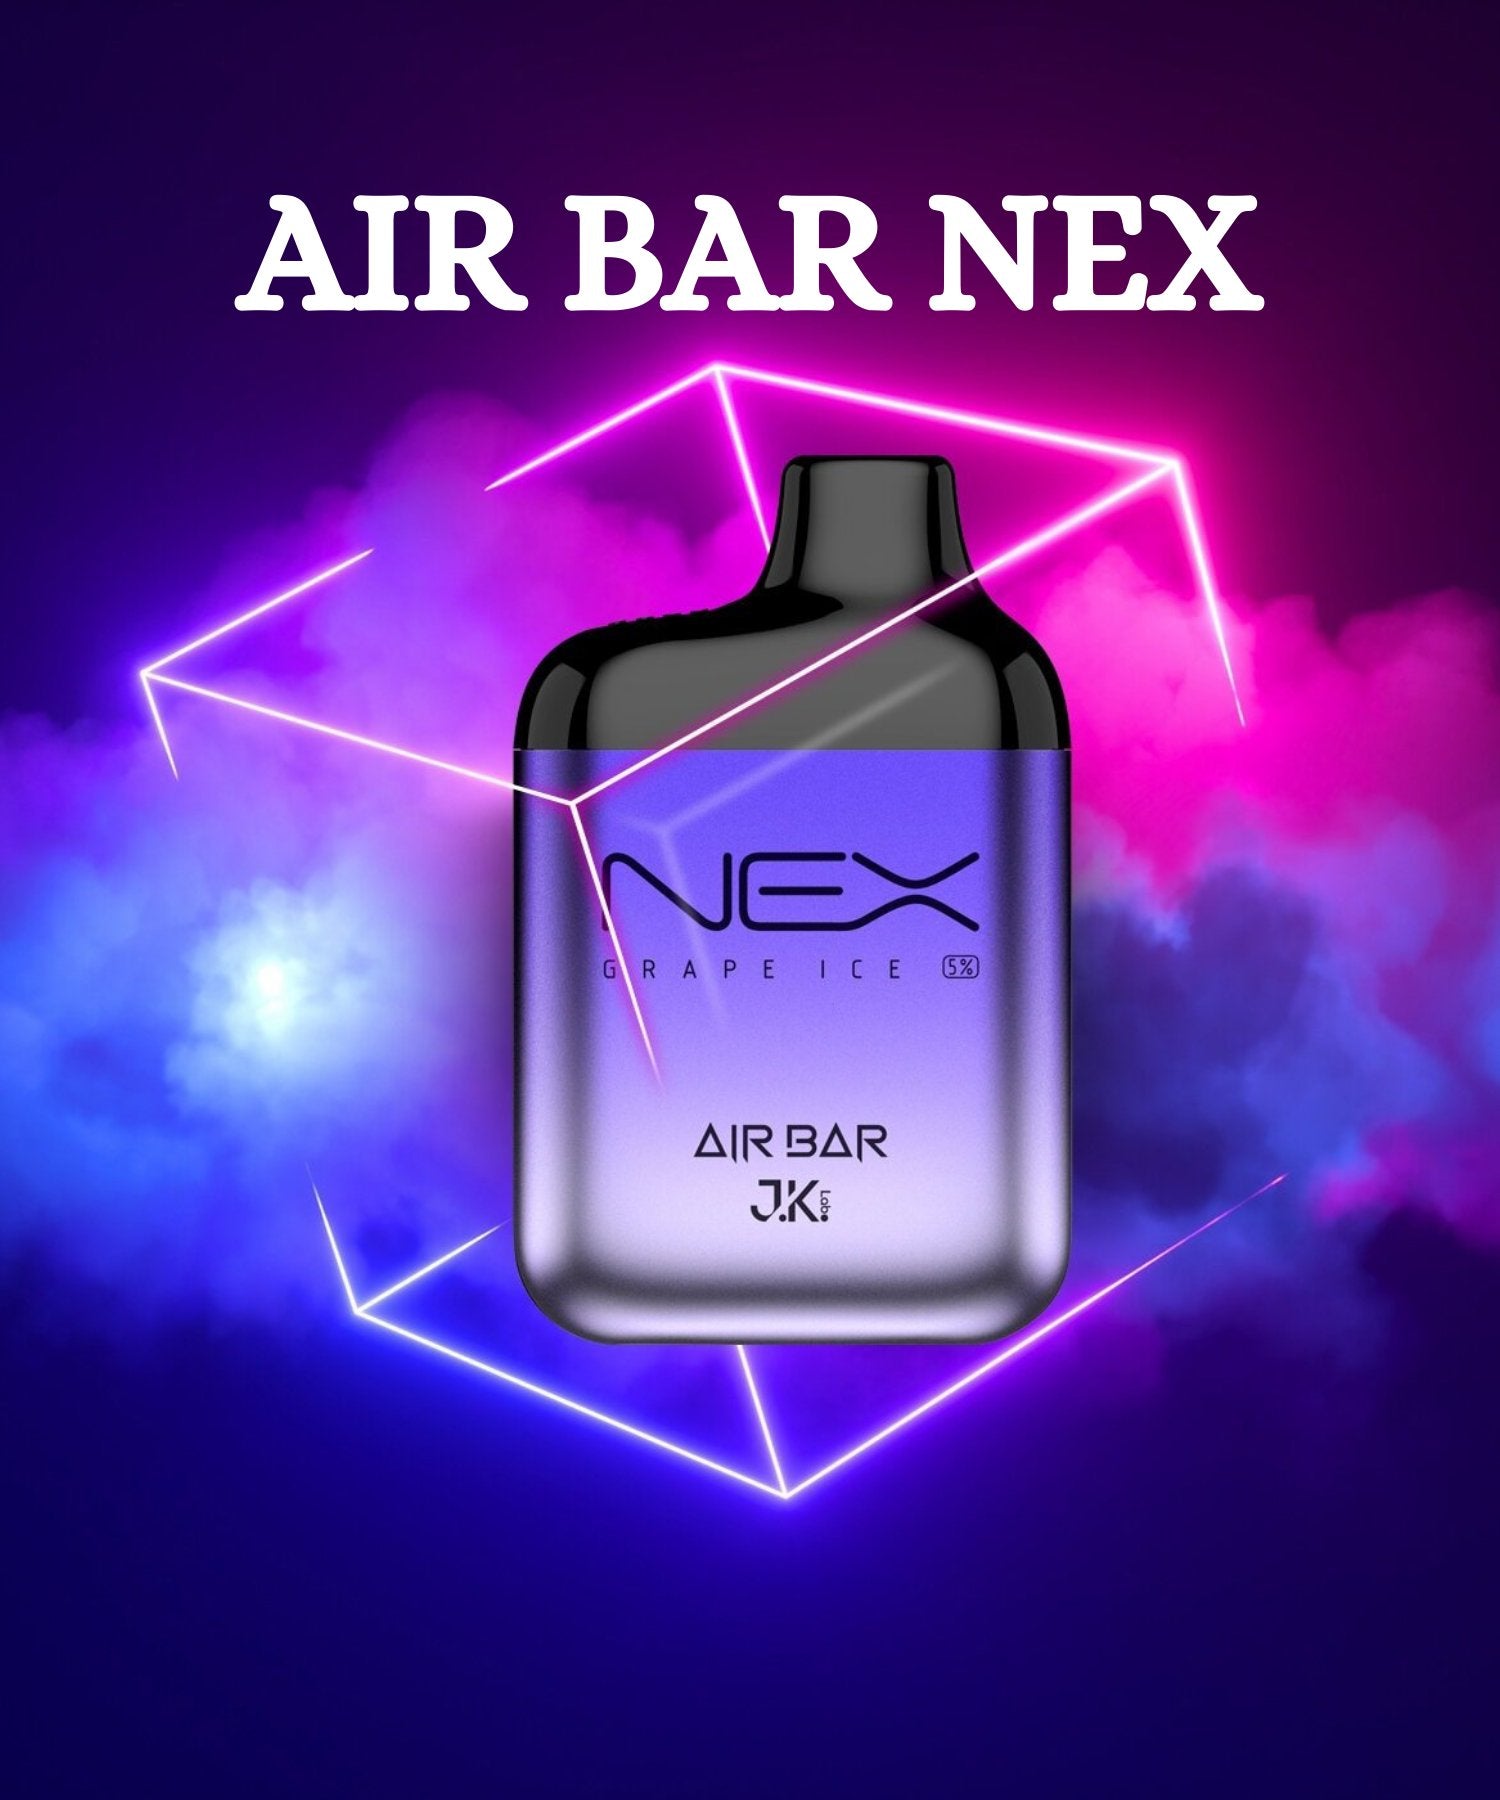 Air Bar Nex